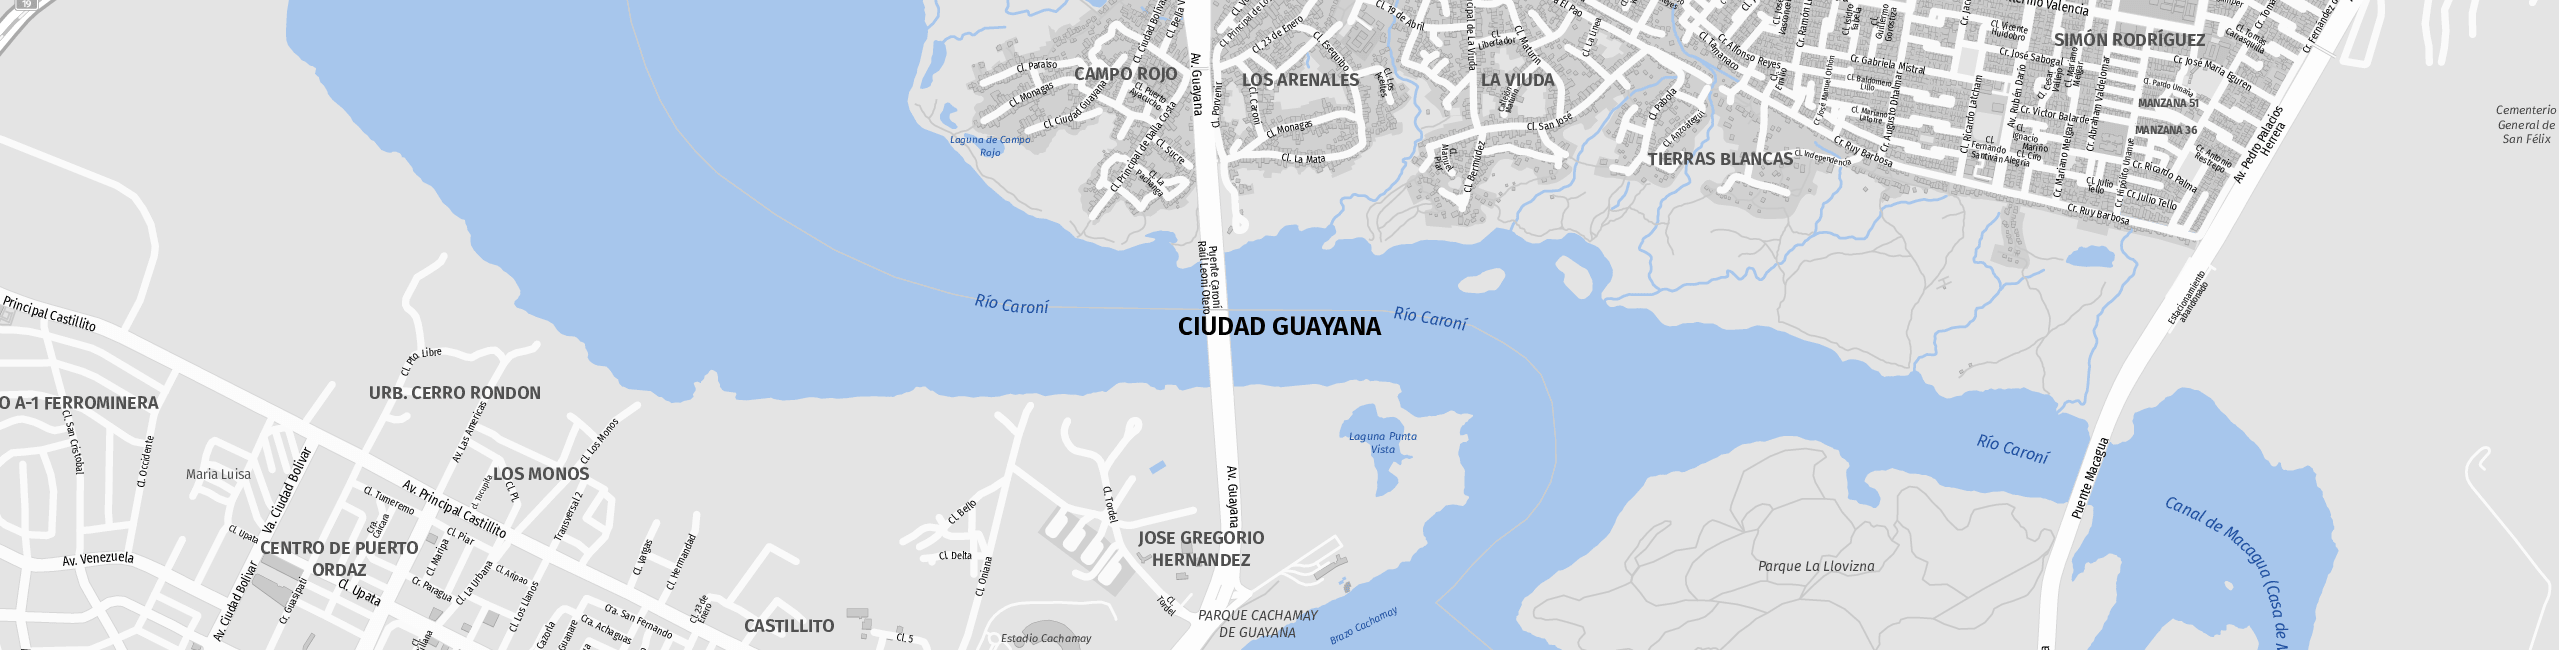 Stadtplan Ciudad Guayana zum Downloaden.